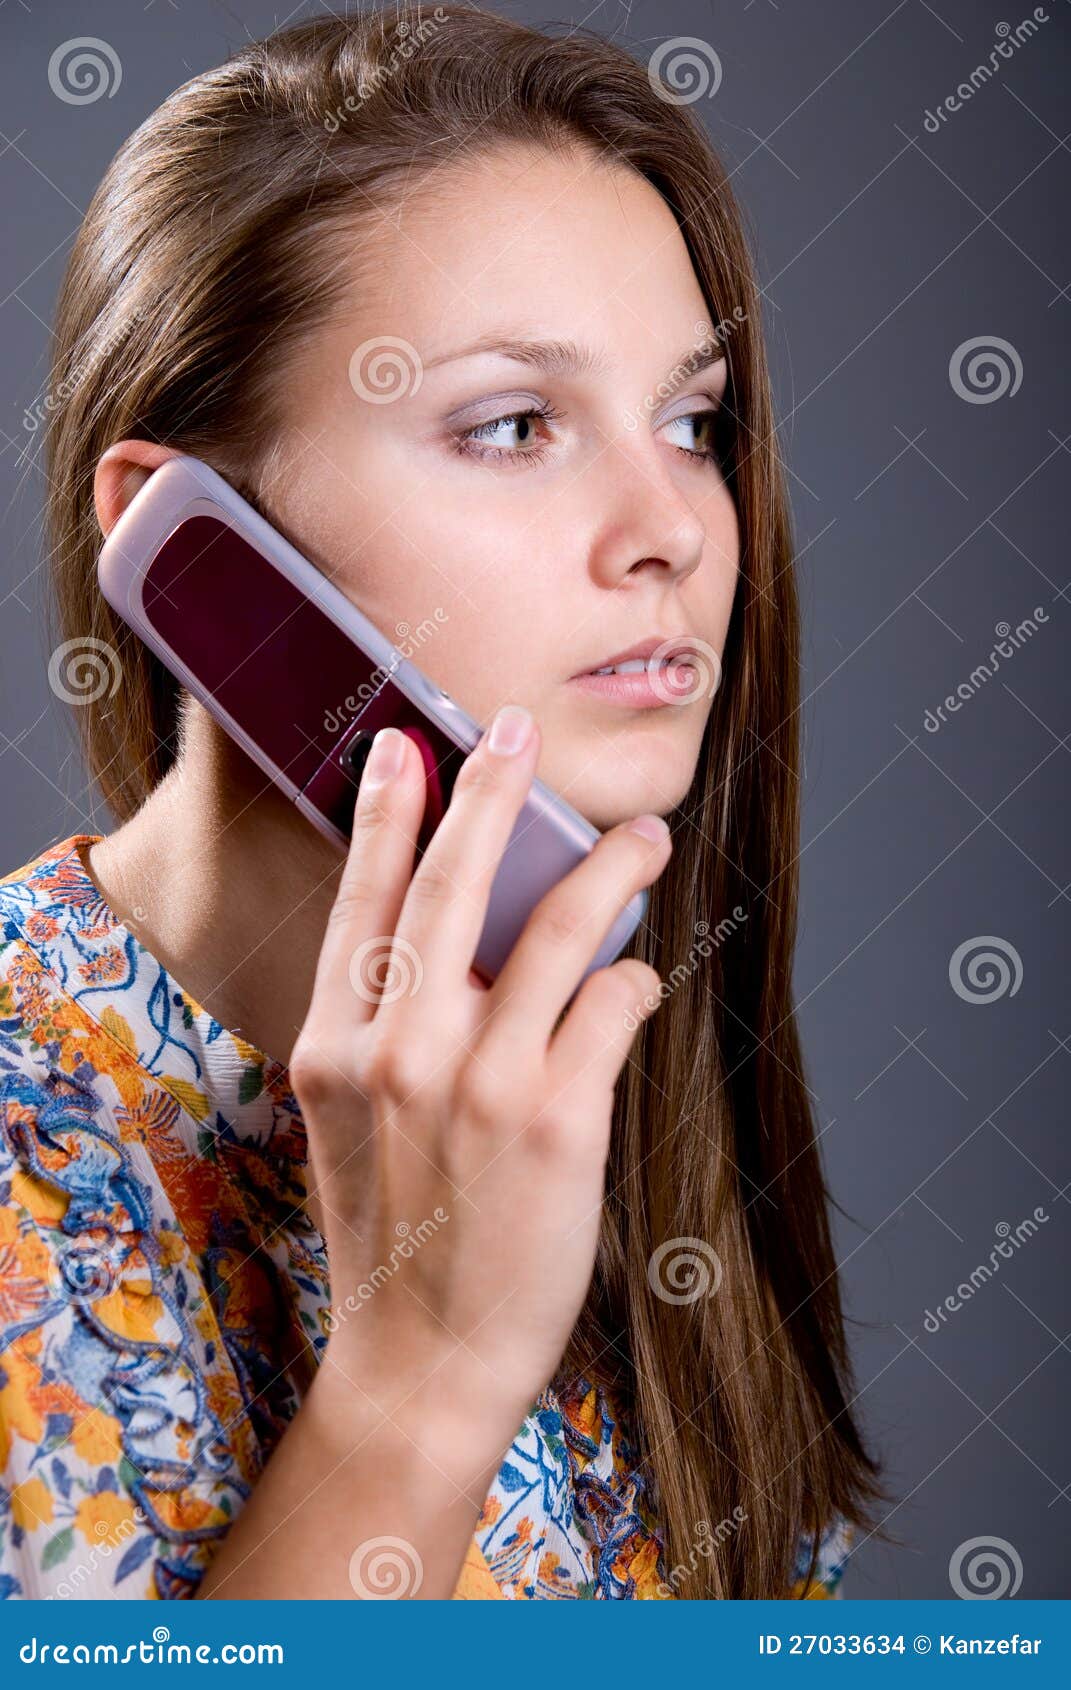 Контроль телефона жены. Девушка с телефоном. Фото с телефона девушки. Девушка с мобильным телефоном. Девушка говорит.